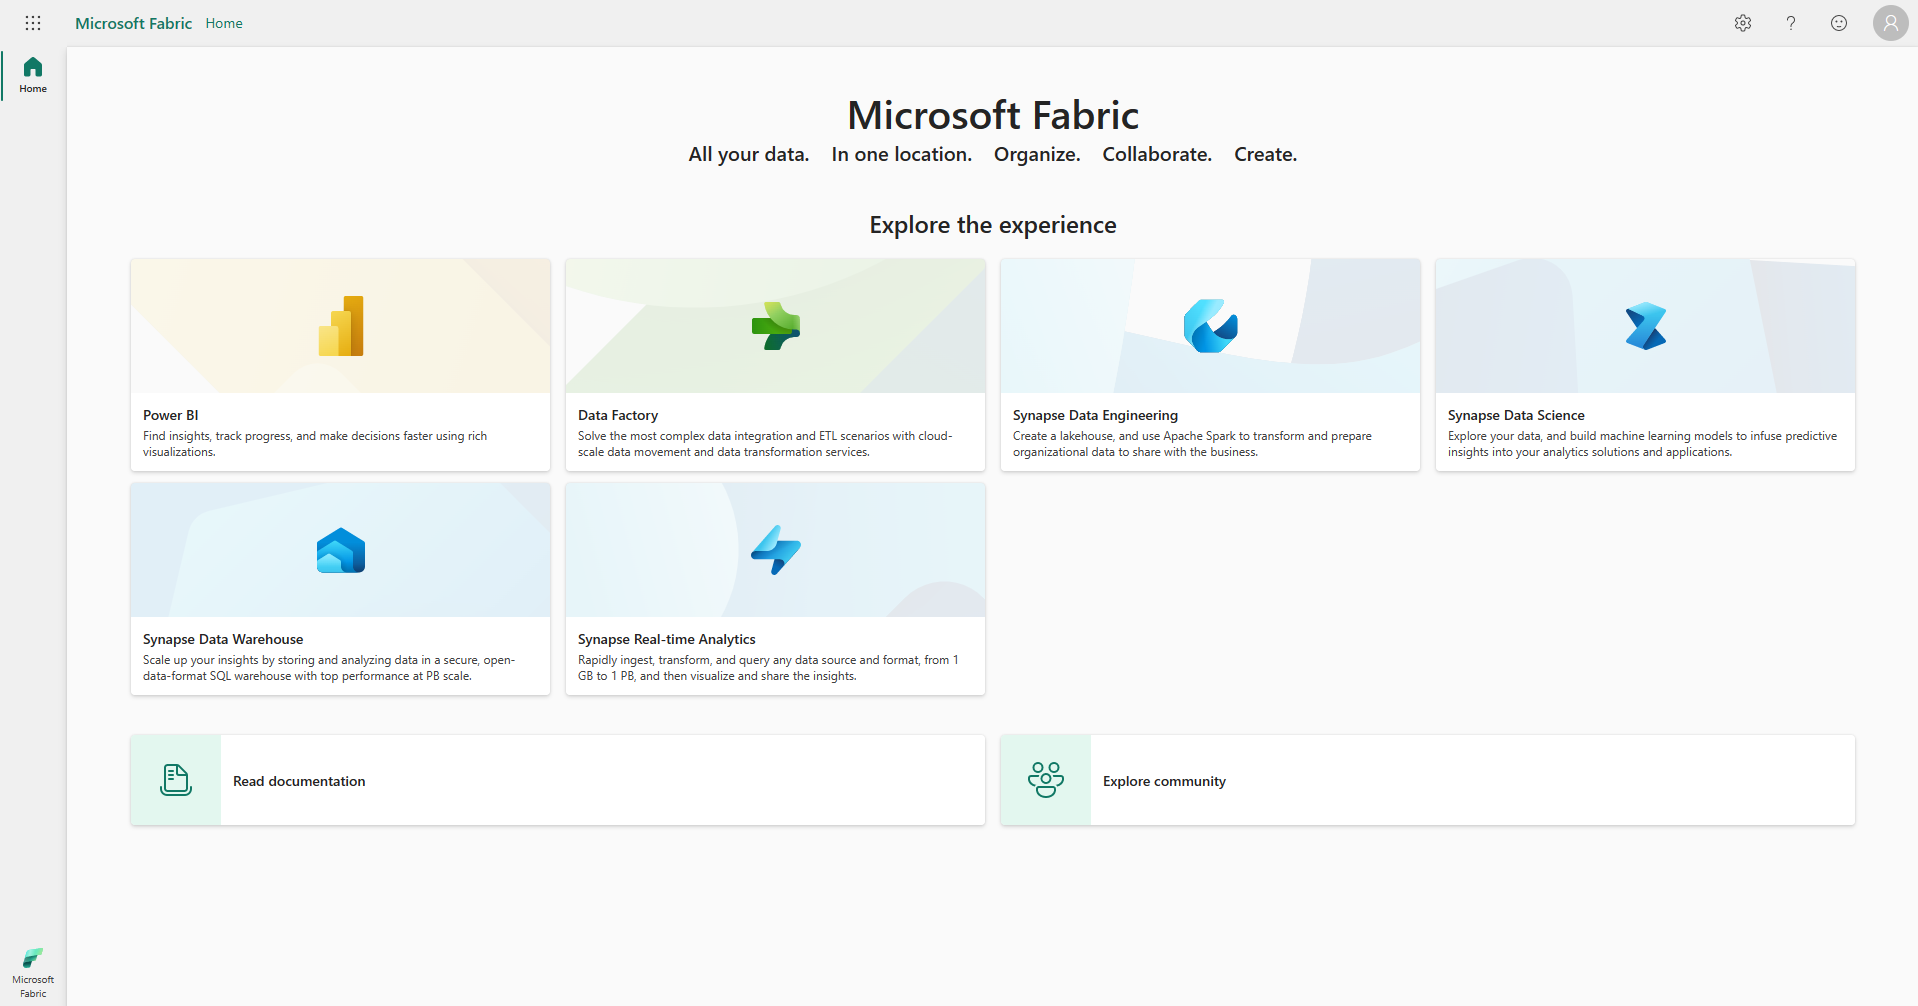 Captura de ecrã da página inicial do Microsoft Fabric com o Gestor de conta delineado a vermelho.